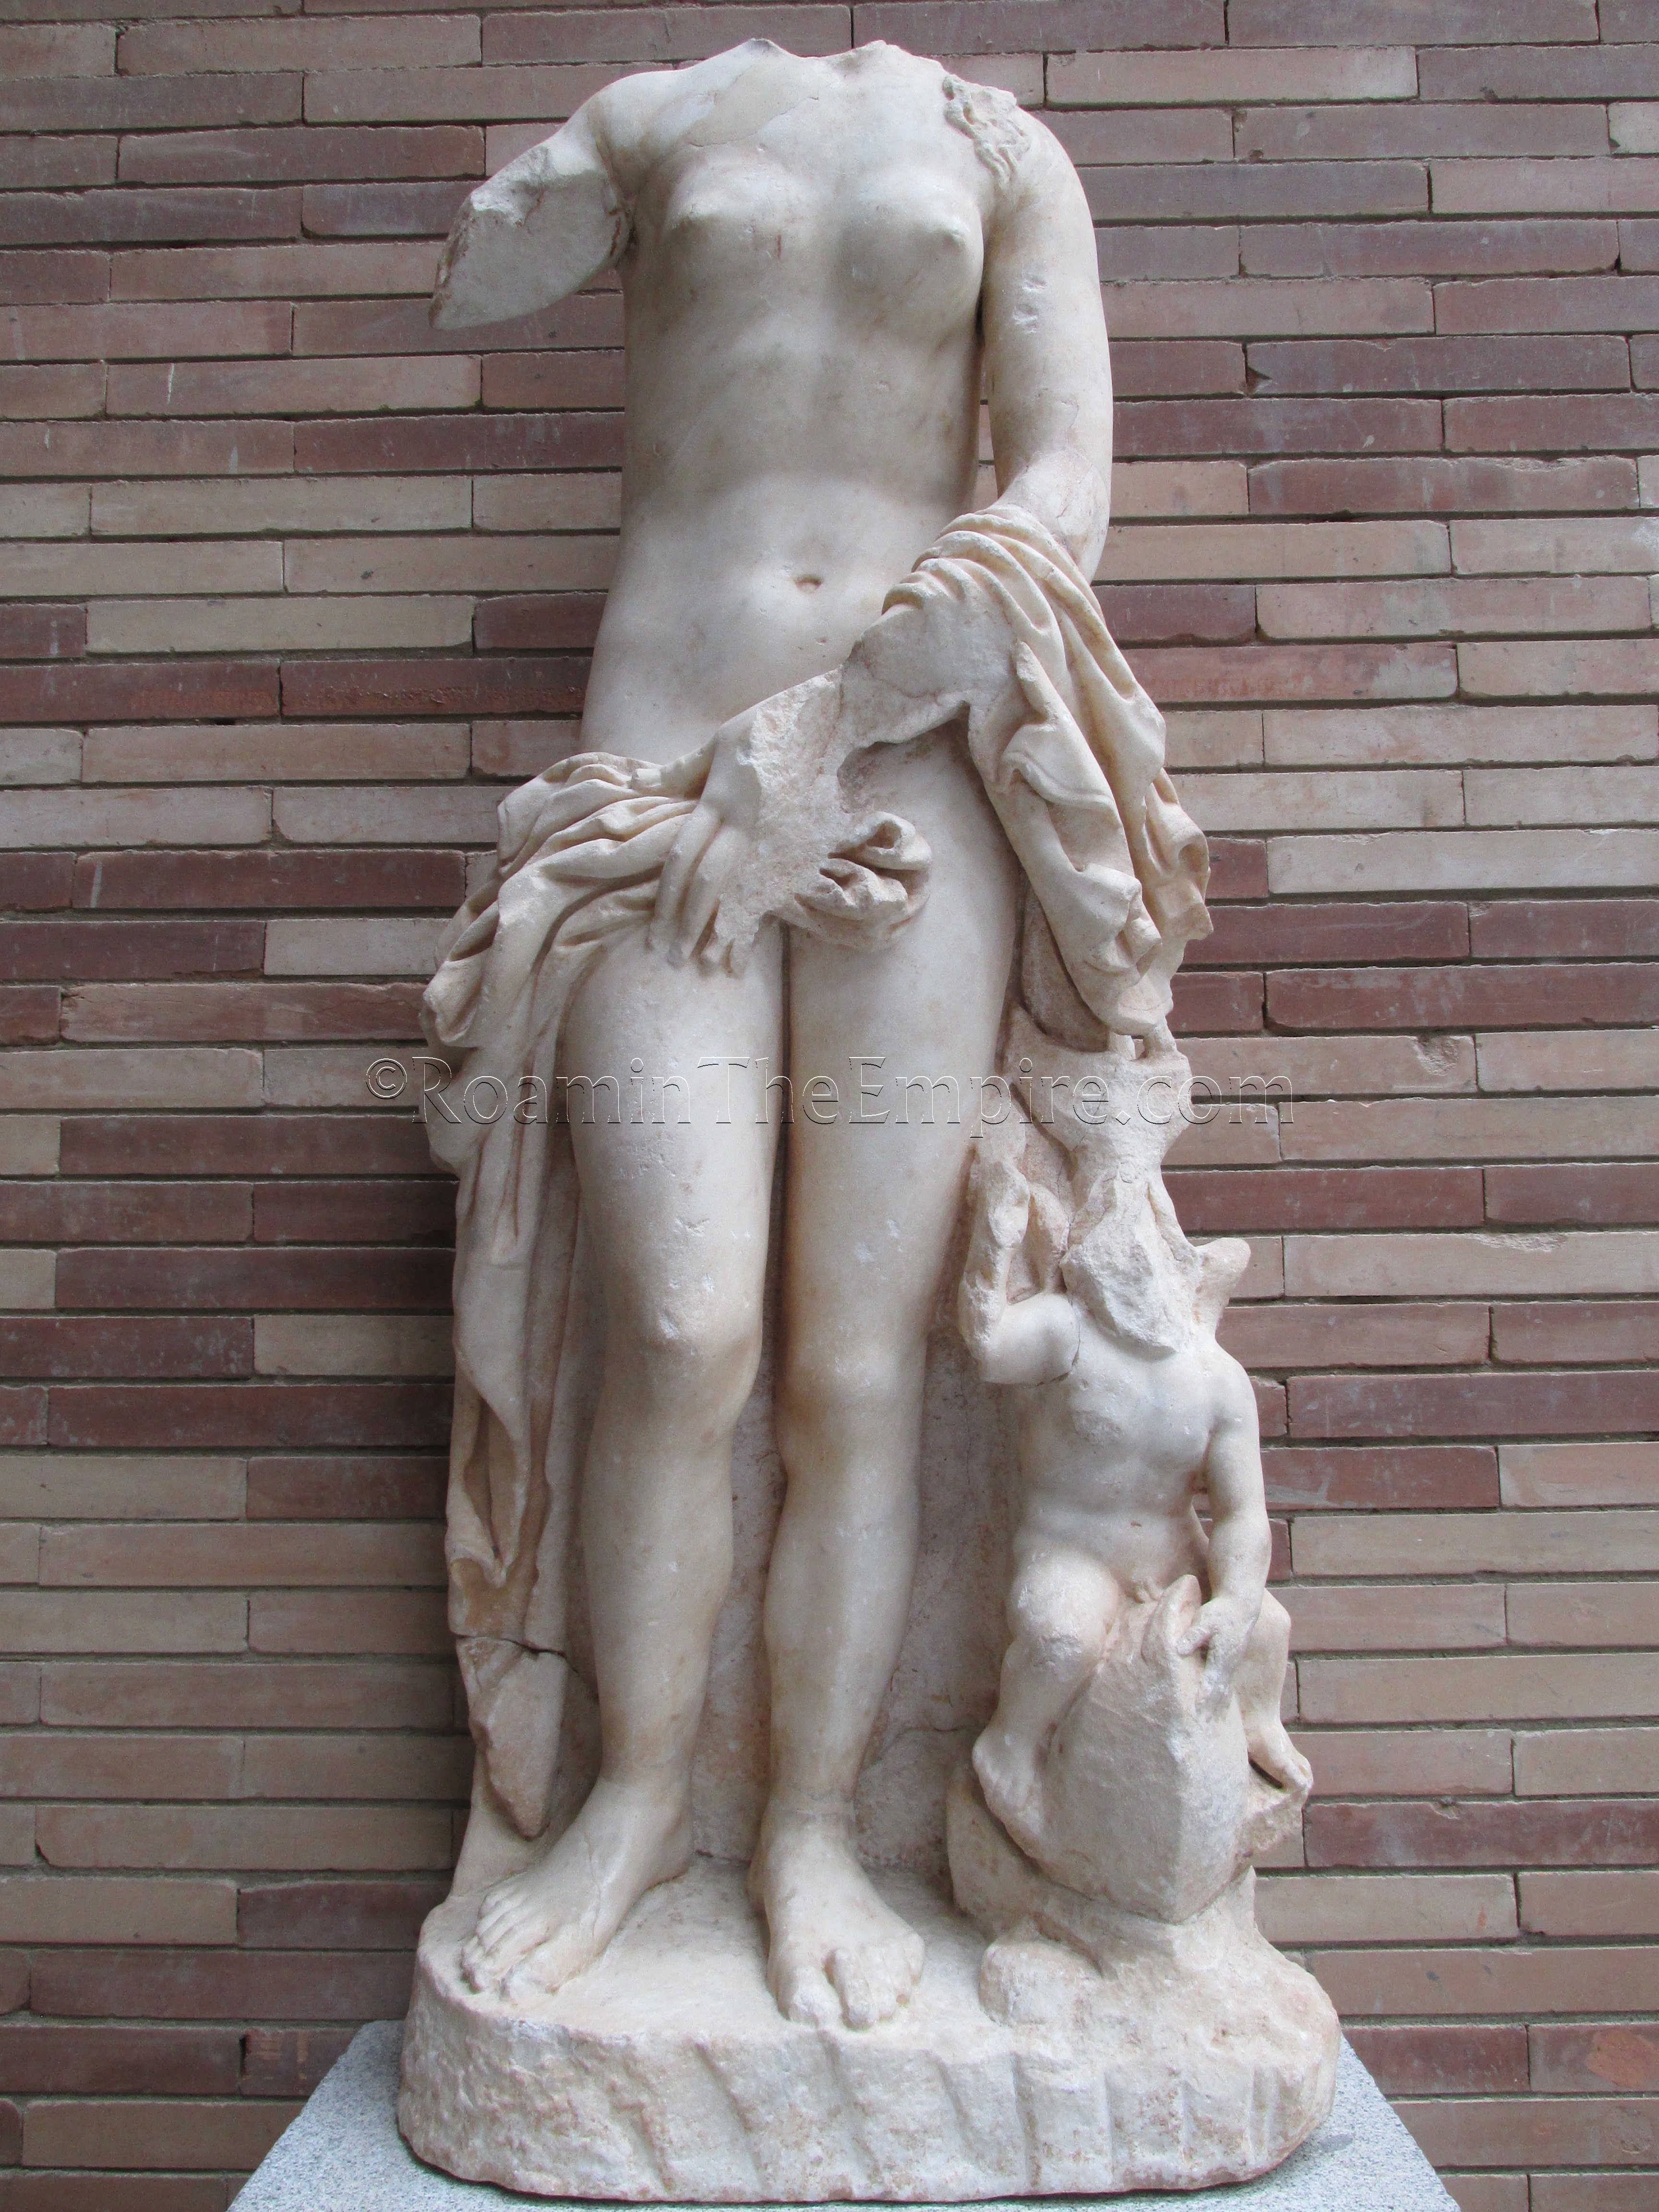 Statue of Venus from the mithraeum, in the Museo Nacional de Arte Romano.